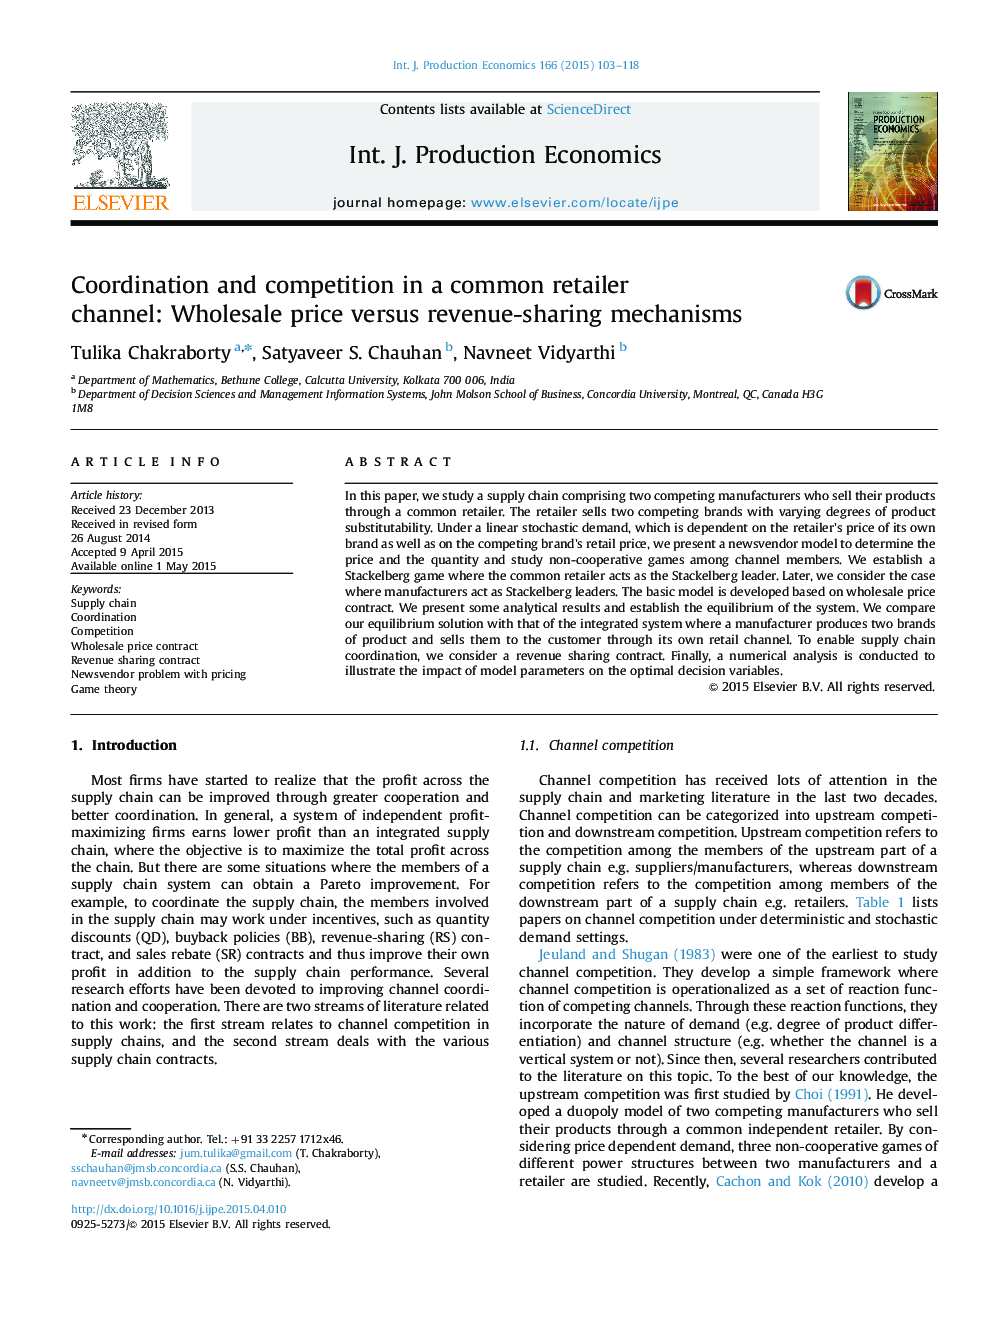 هماهنگی و رقابت در یک کانال خرده فروشی مشترک: مکانیسم قیمت عمده فروشی در مقایسه با درآمد 